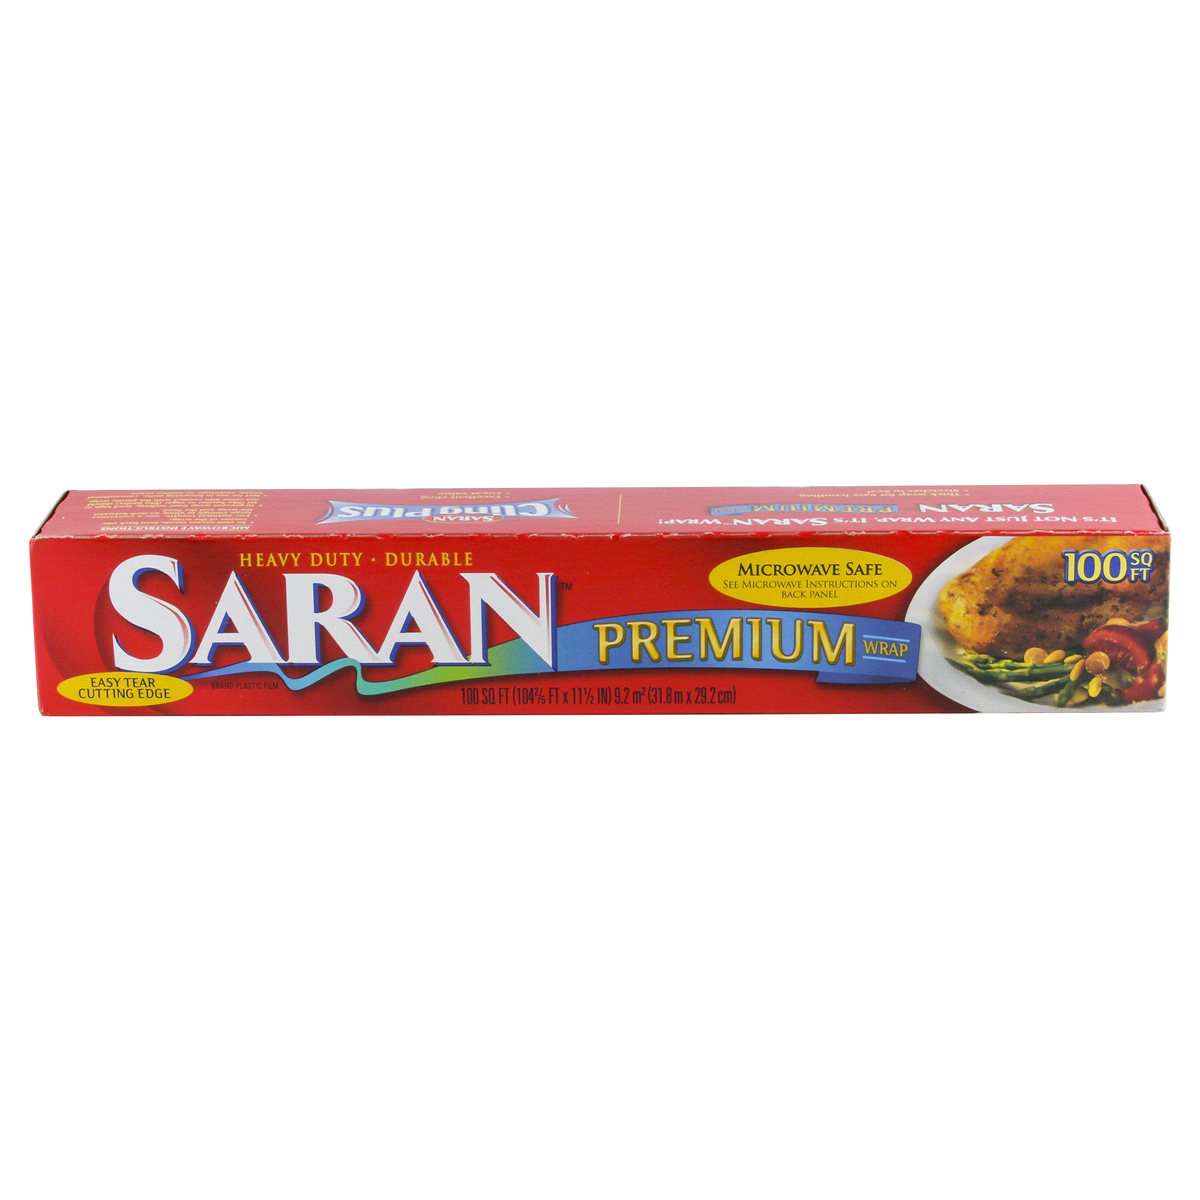 slide 6 of 6, Saran Premium Wrap 100 sq ft, 1 ct